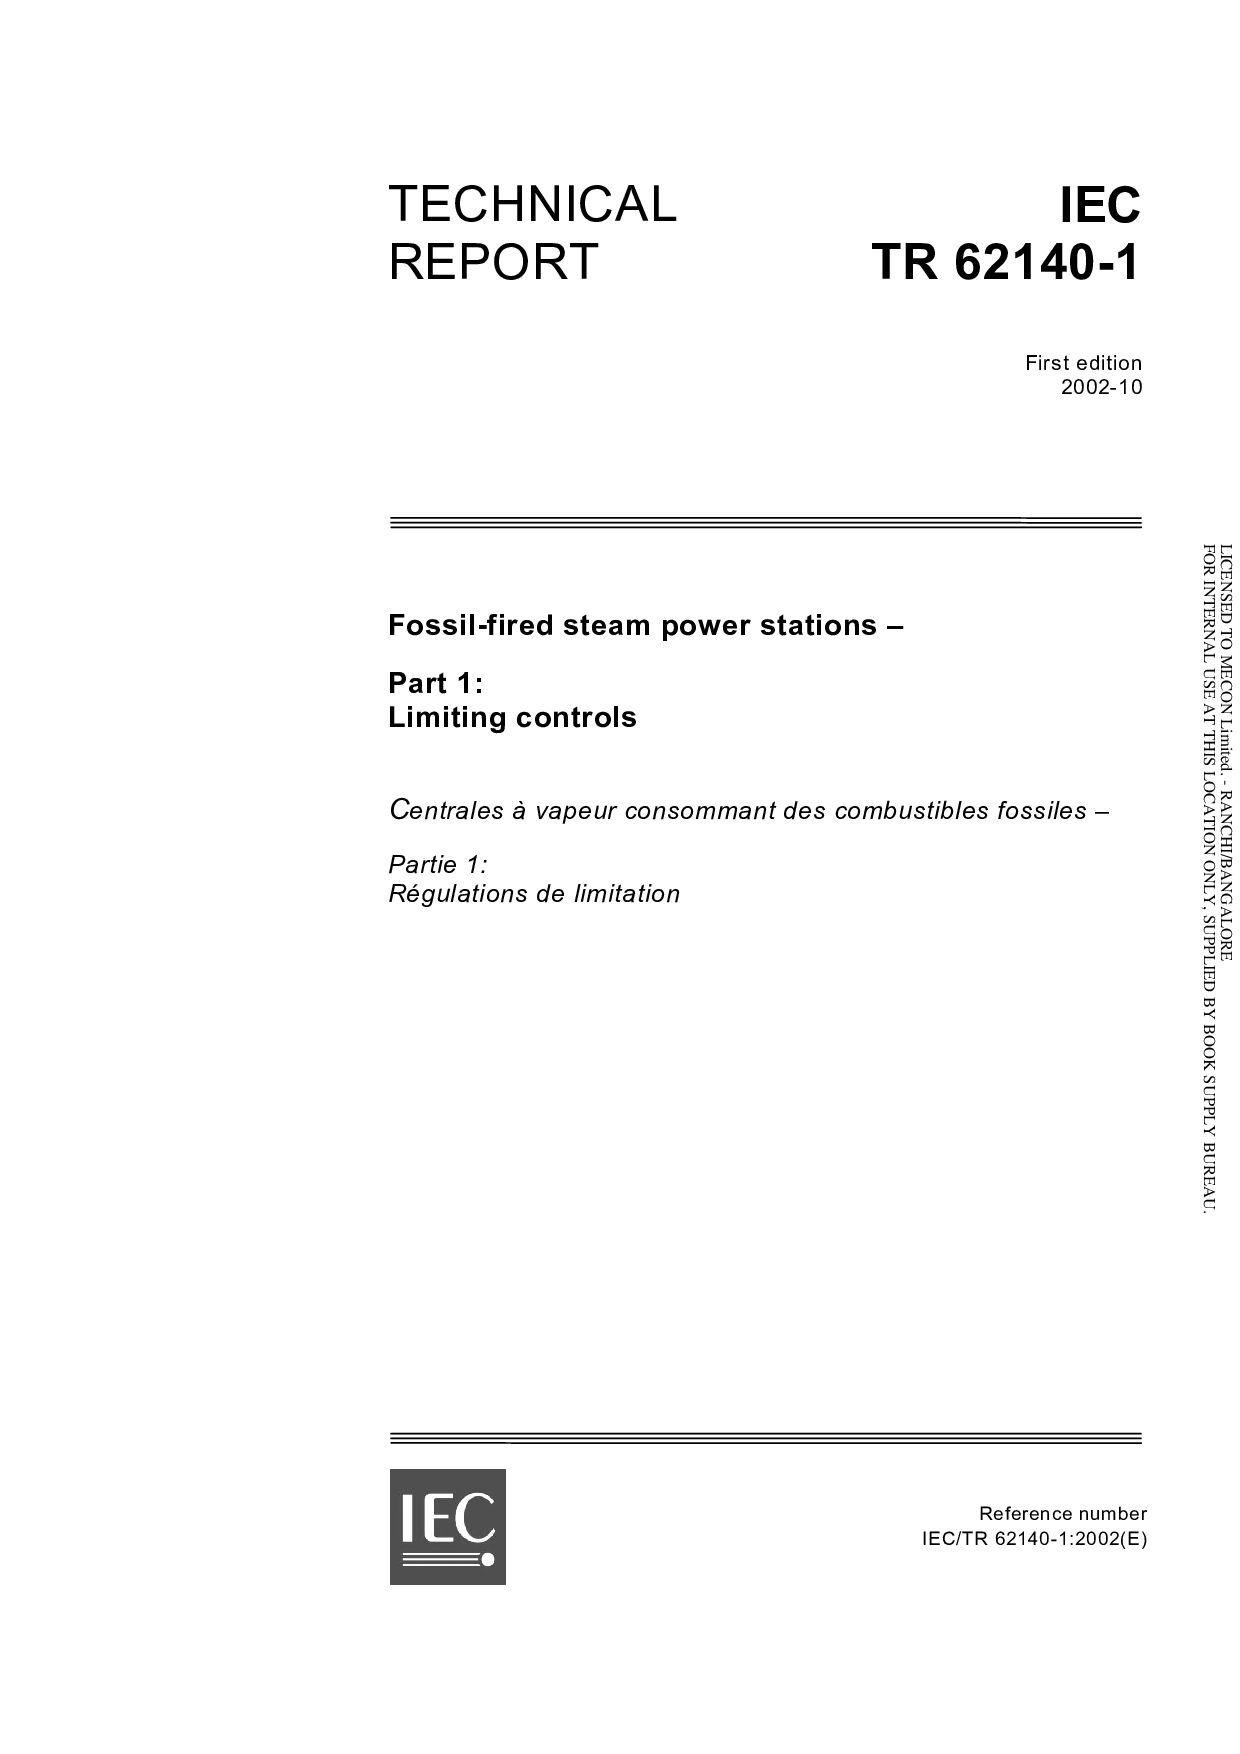 IEC TR 62140-1:2002